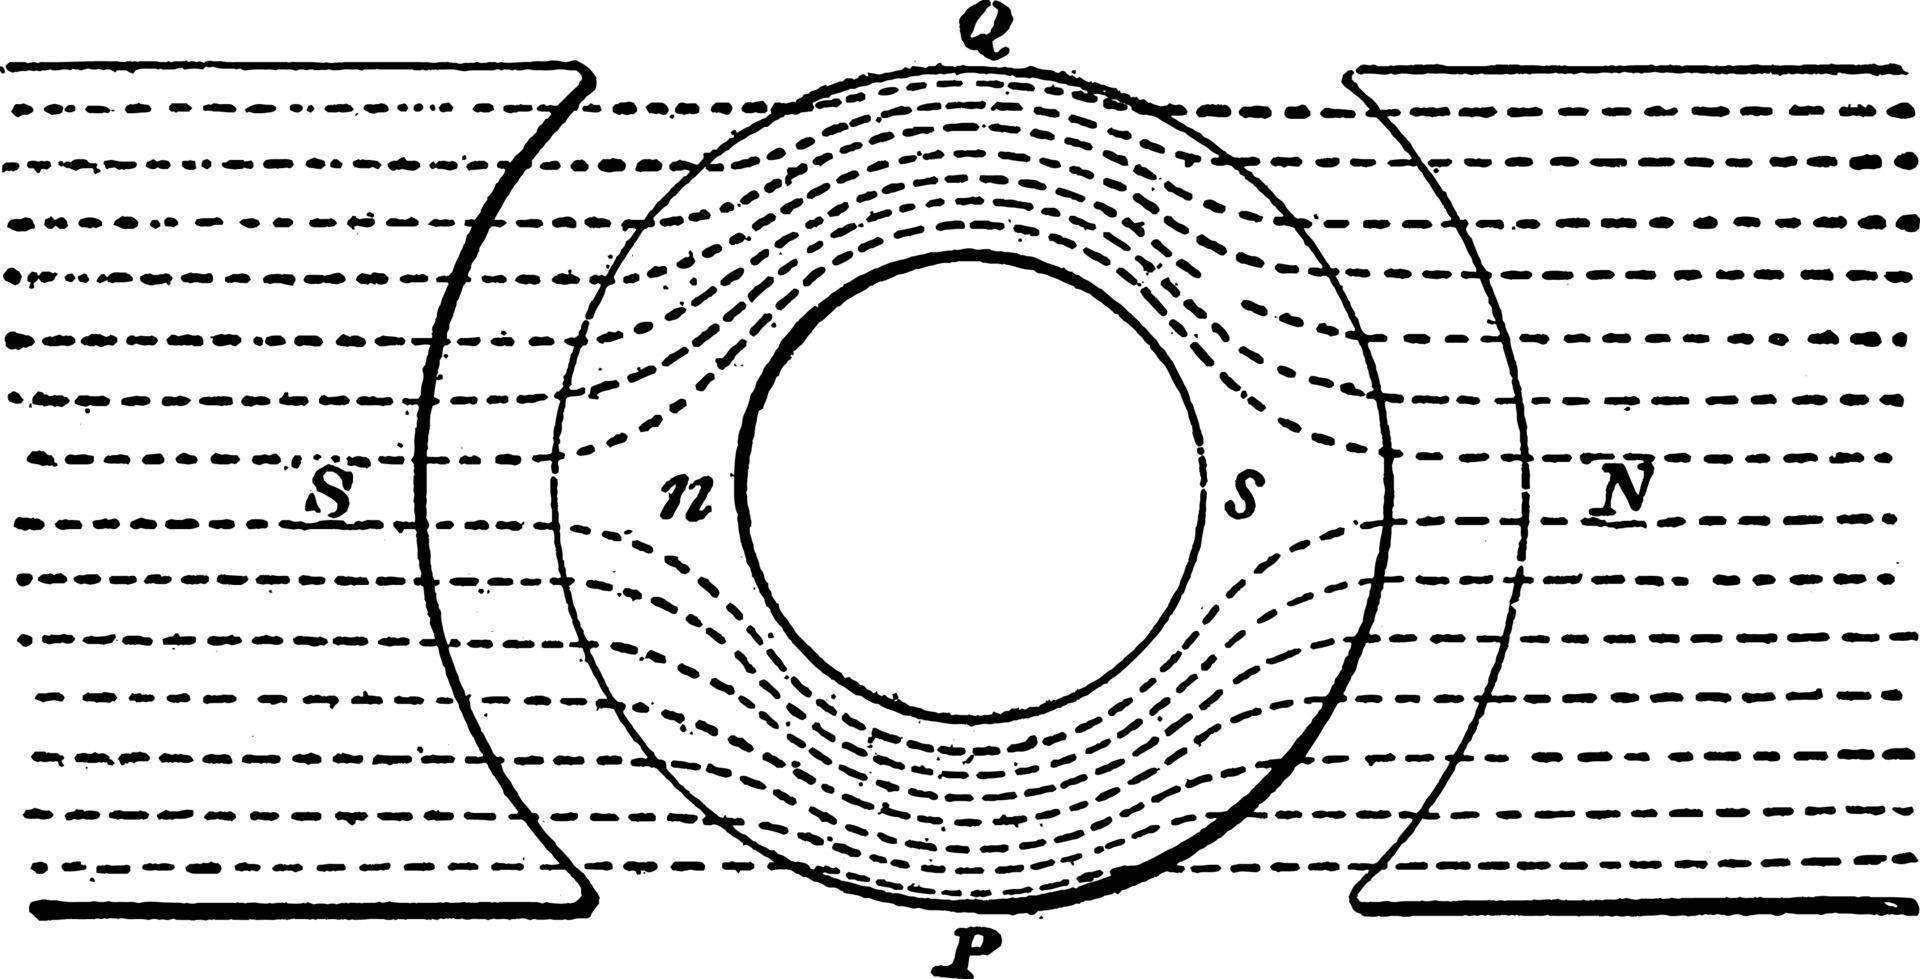 hystérésis magnétique dans le noyau d'armature, illustration vintage. vecteur